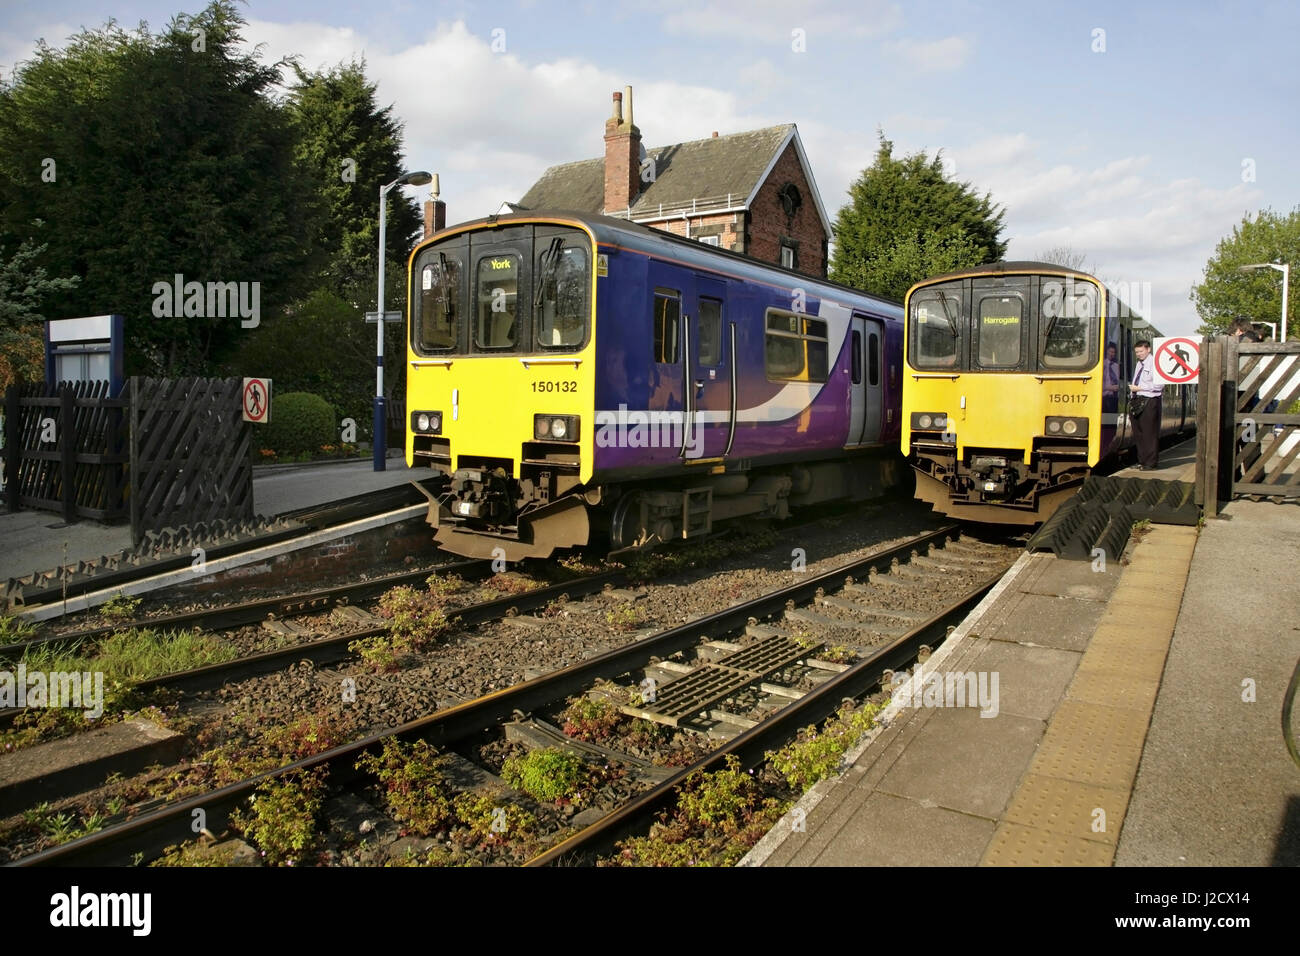 Nord classe rampa 150 "stampante" diesel multiple unità alla stazione Poppleton, North Yorkshire, Regno Unito. Foto Stock